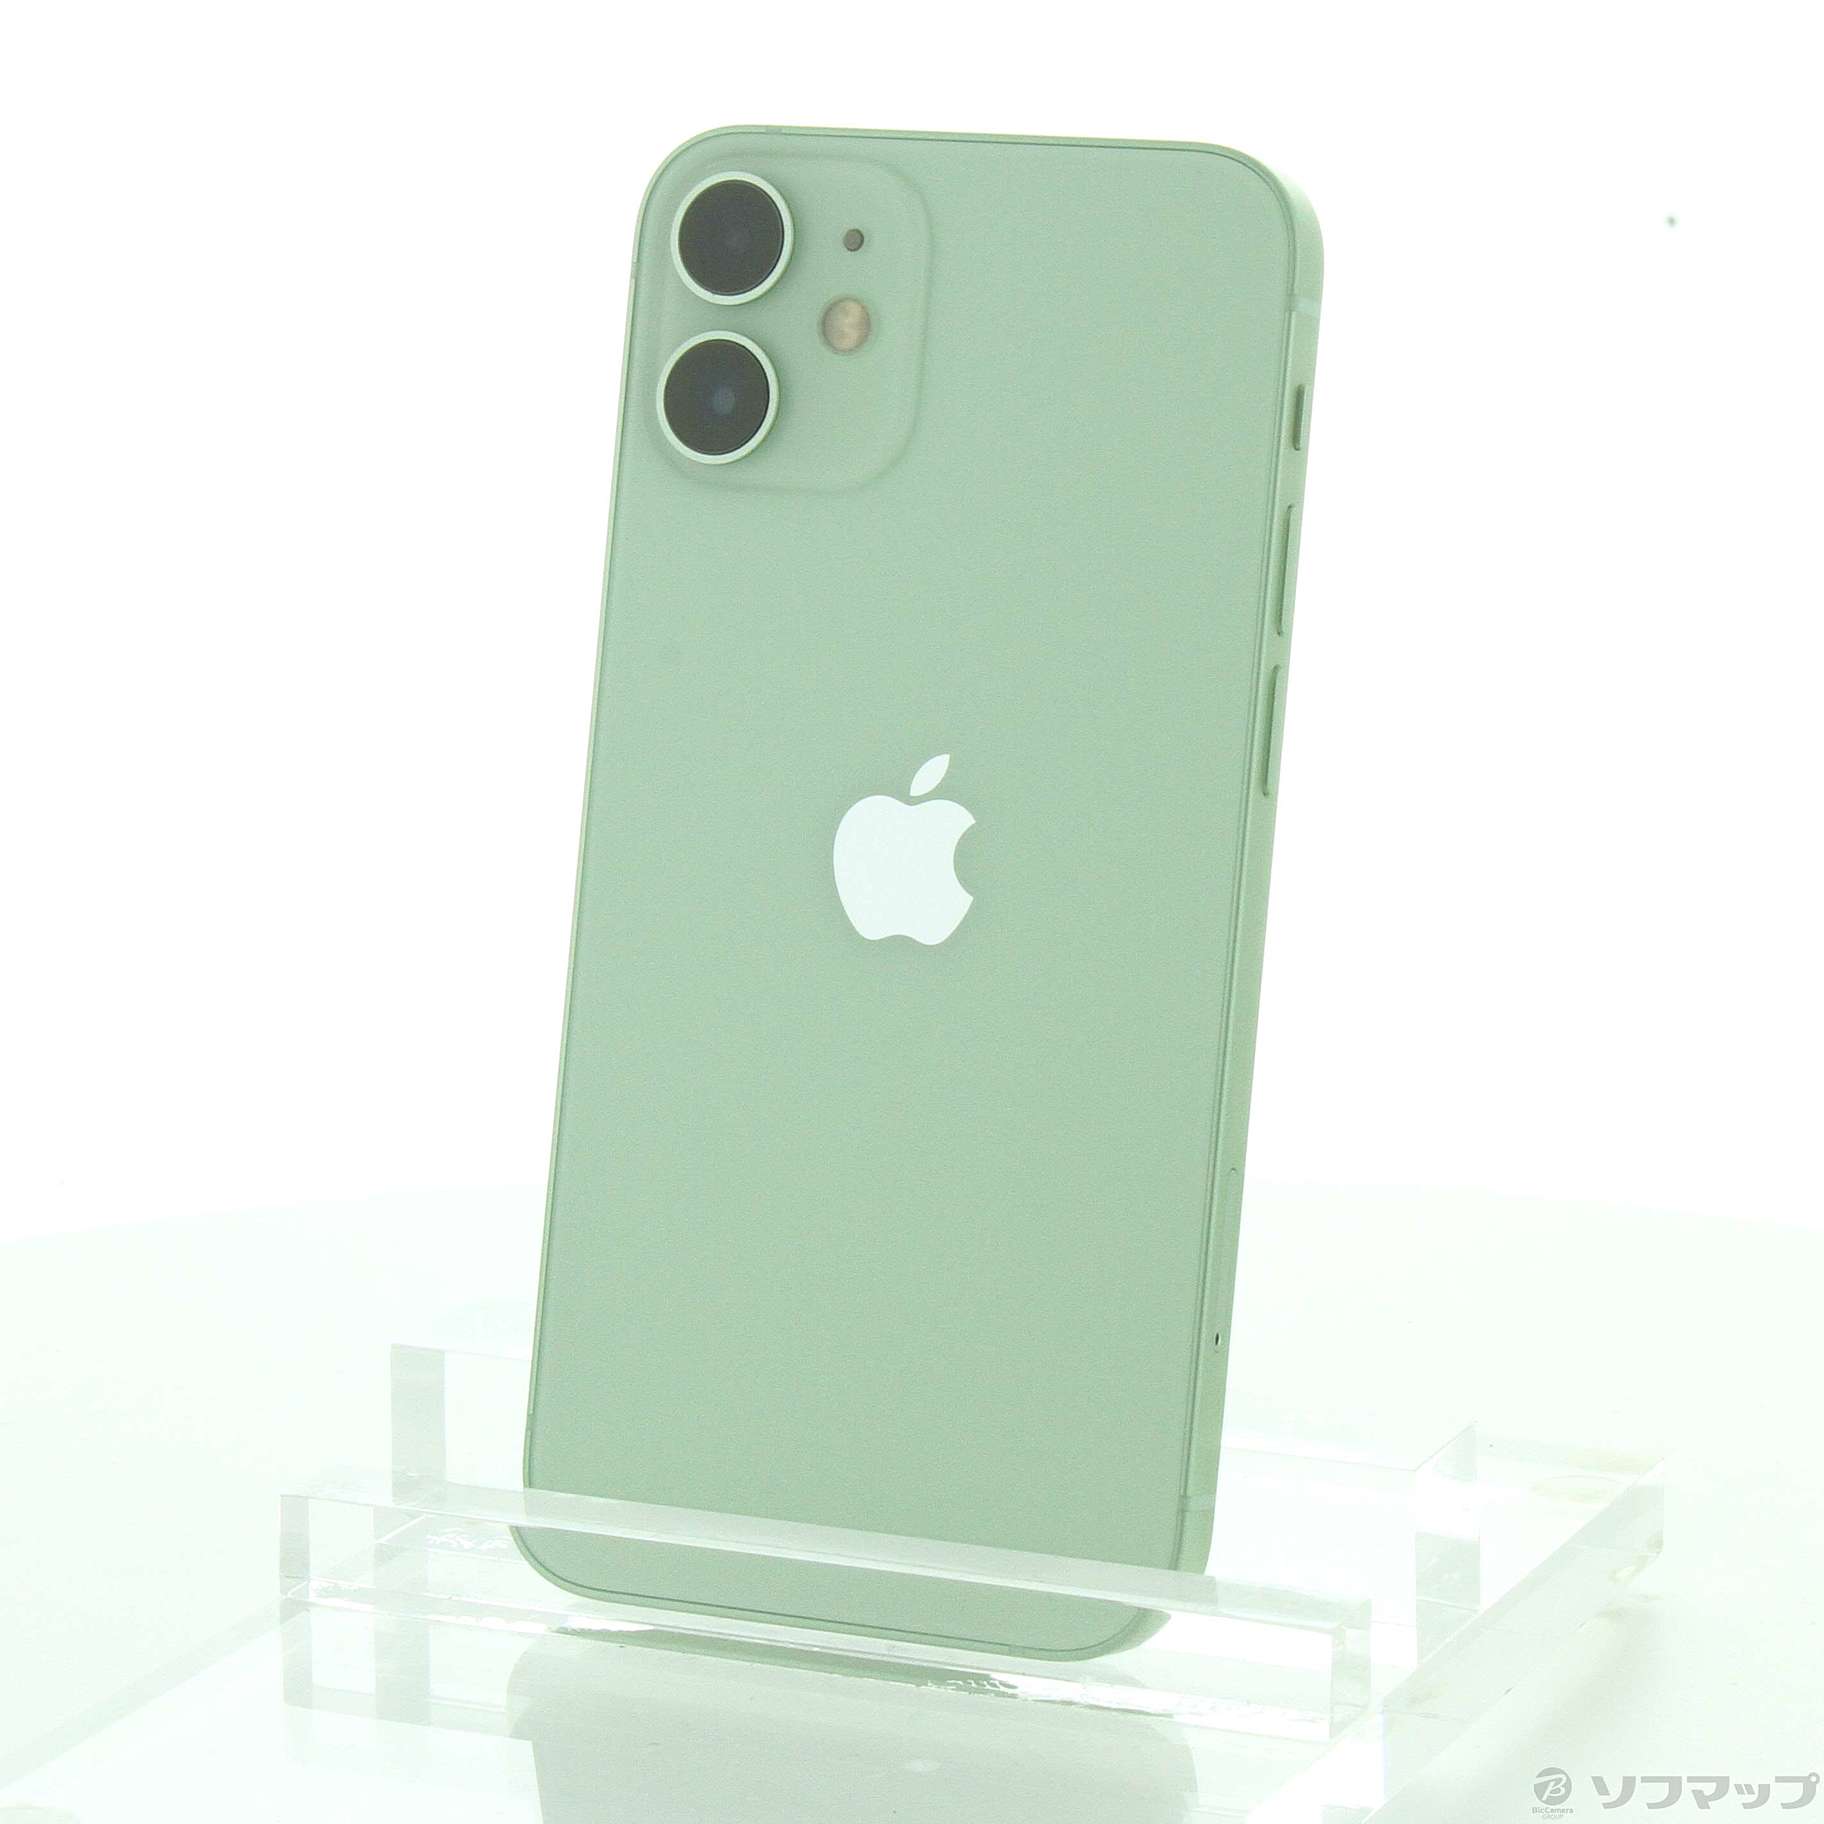 正規取扱店で Apple iPhone 12 グリーン 64GB SIMフリー スマートフォン本体